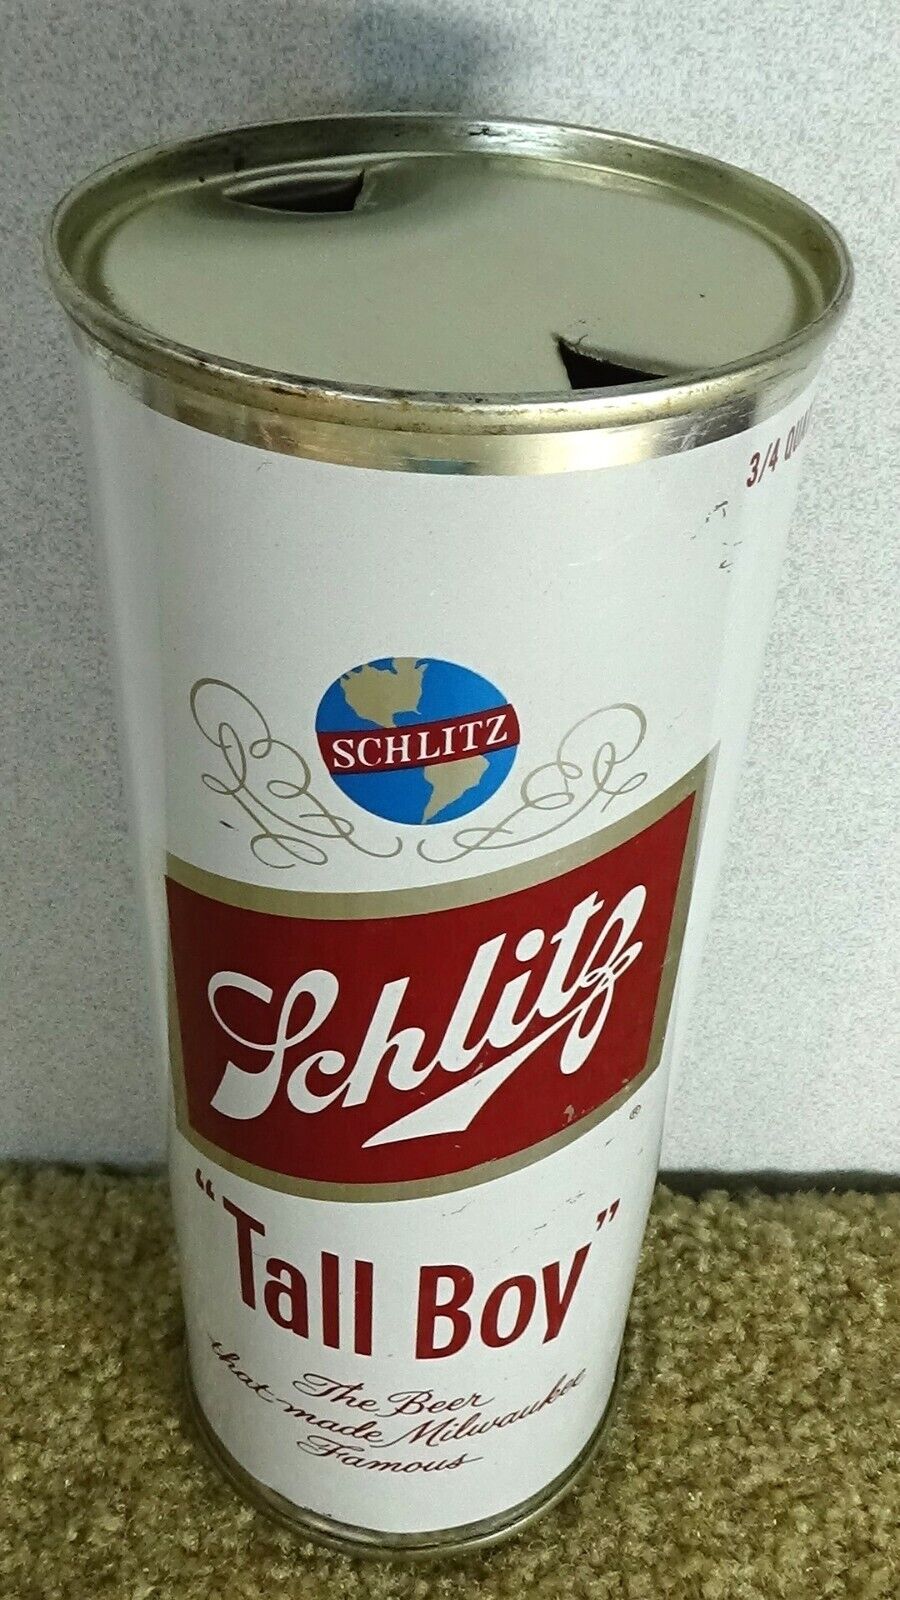 *1960* Schlitz Tall Boy Flat top beer can